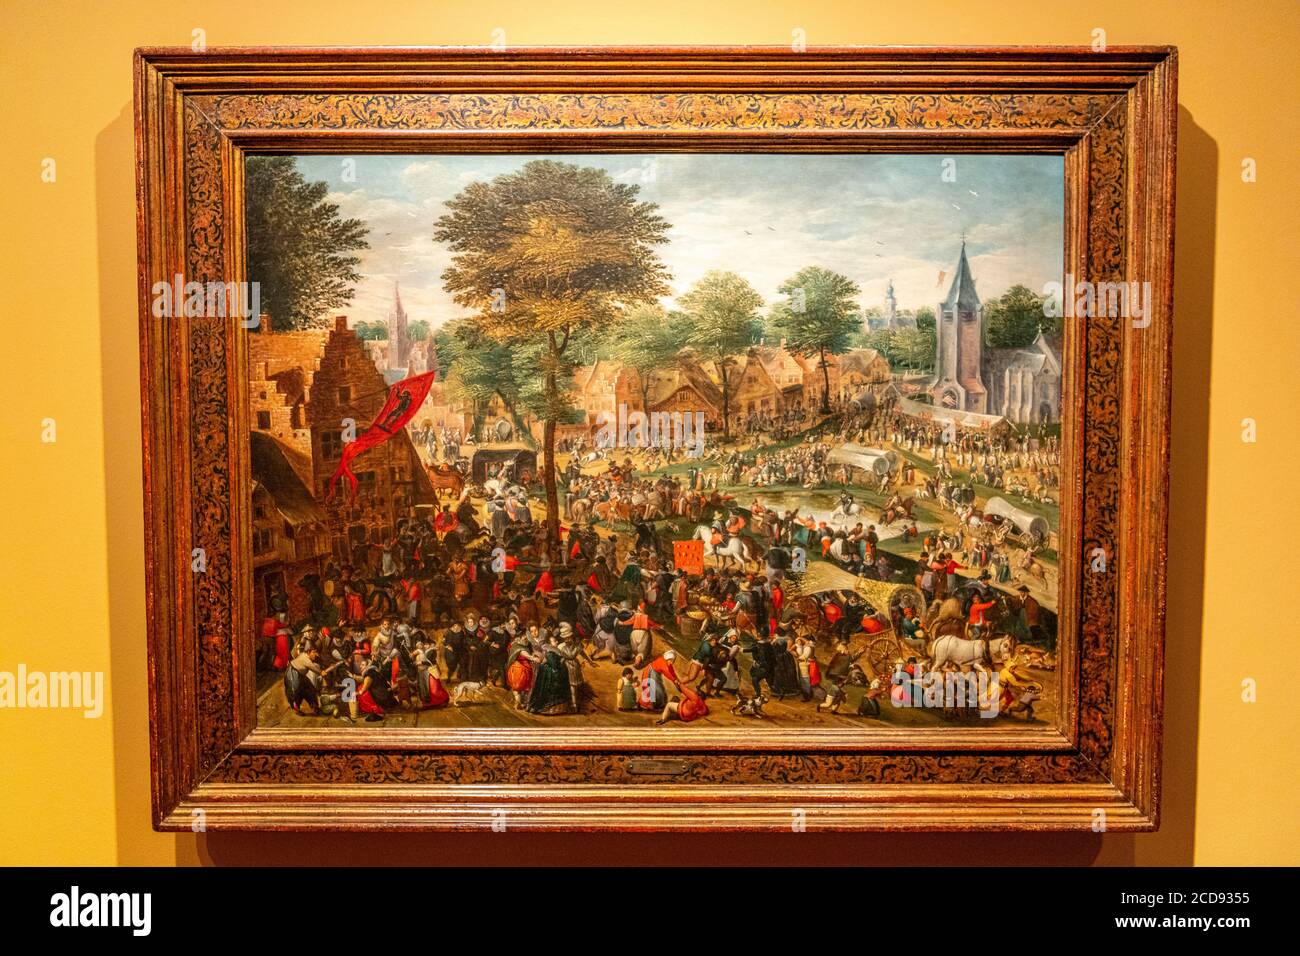 France, Nord (59), Cassel, village favori des Français en 2018, le Musée départemental de Flandre accueille l'exposition festivités et foires à l'époque de Brueghel Banque D'Images